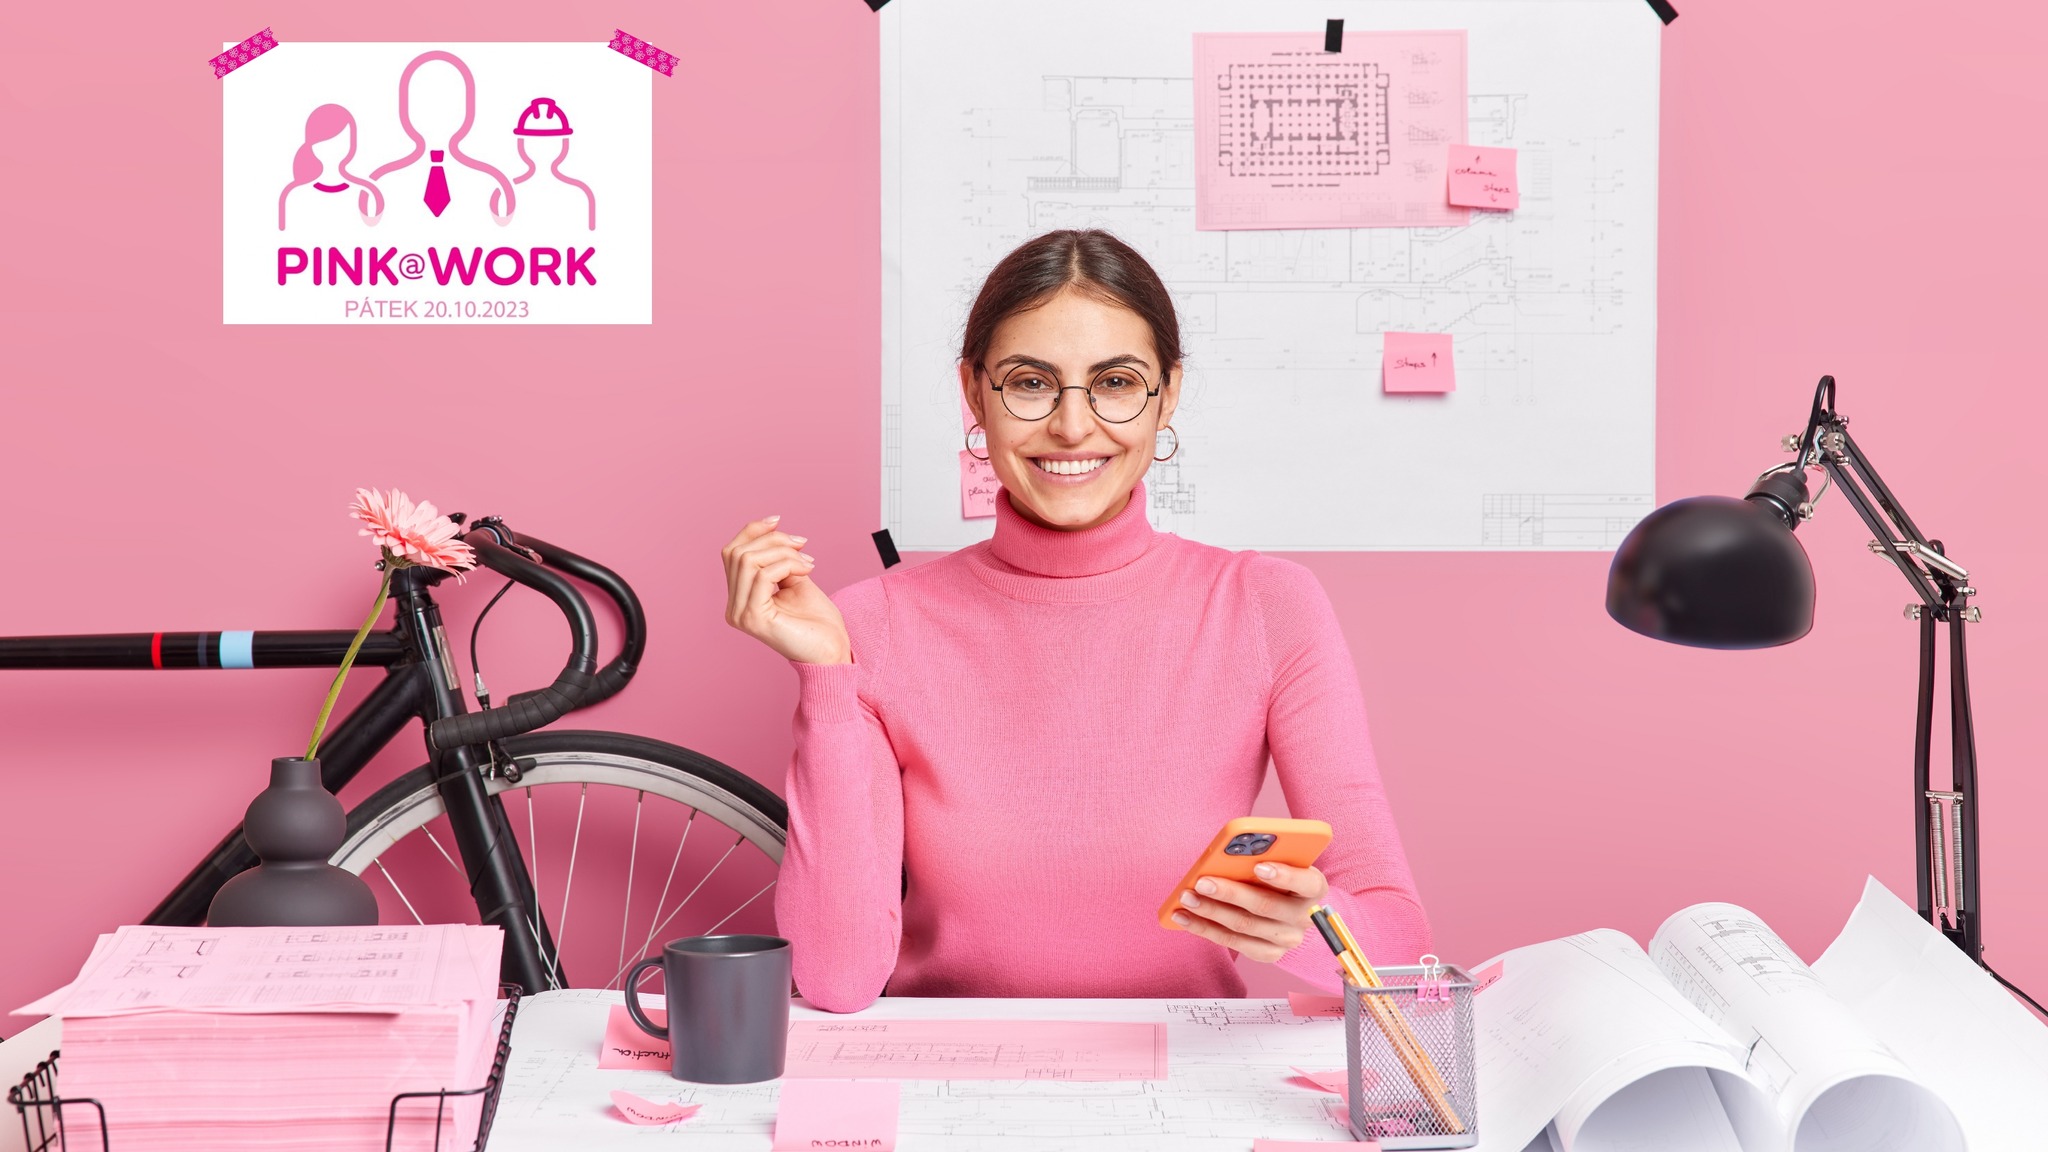 PINK@WORK aneb přijď v růžové do práce – 20. října 2023